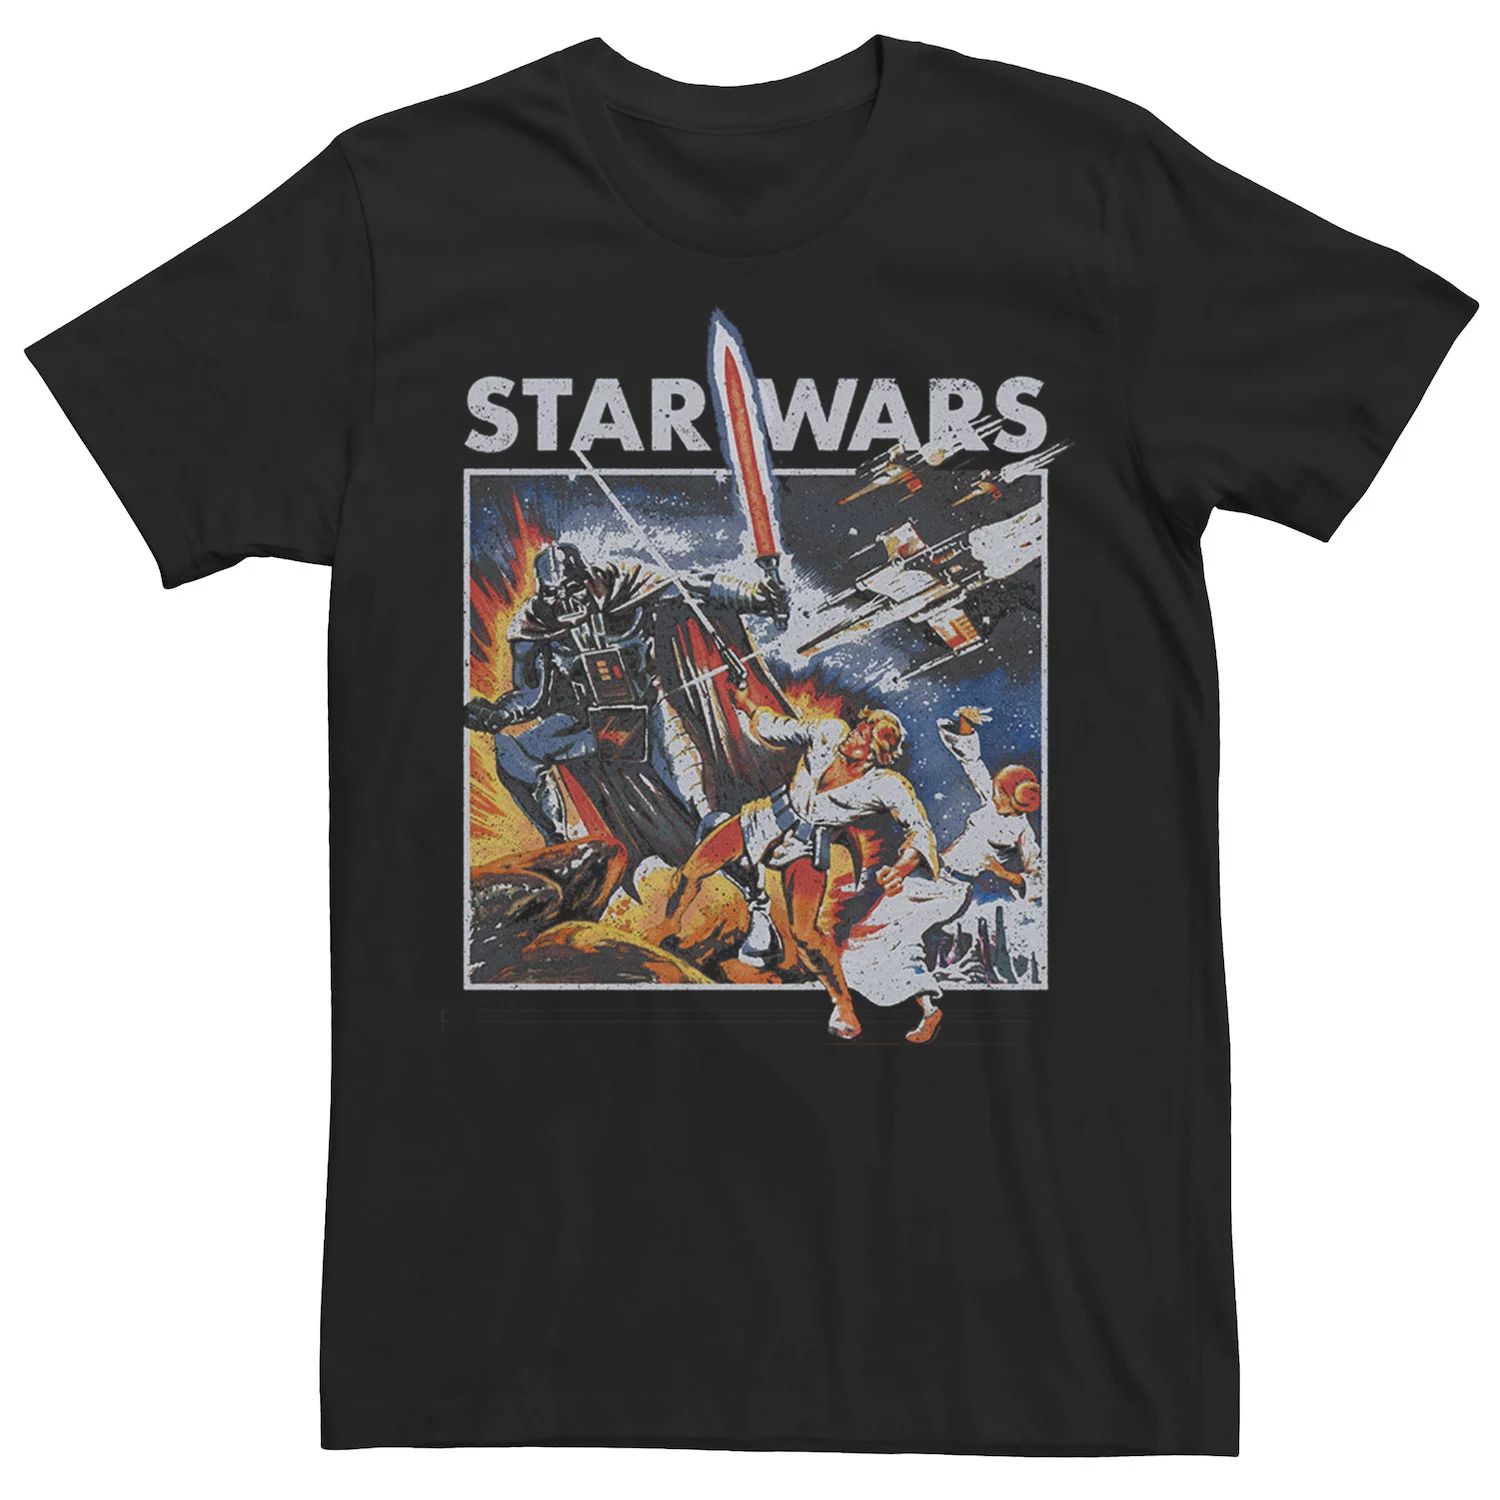 Мужская винтажная футболка с графическим плакатом и боевым плакатом Star Wars